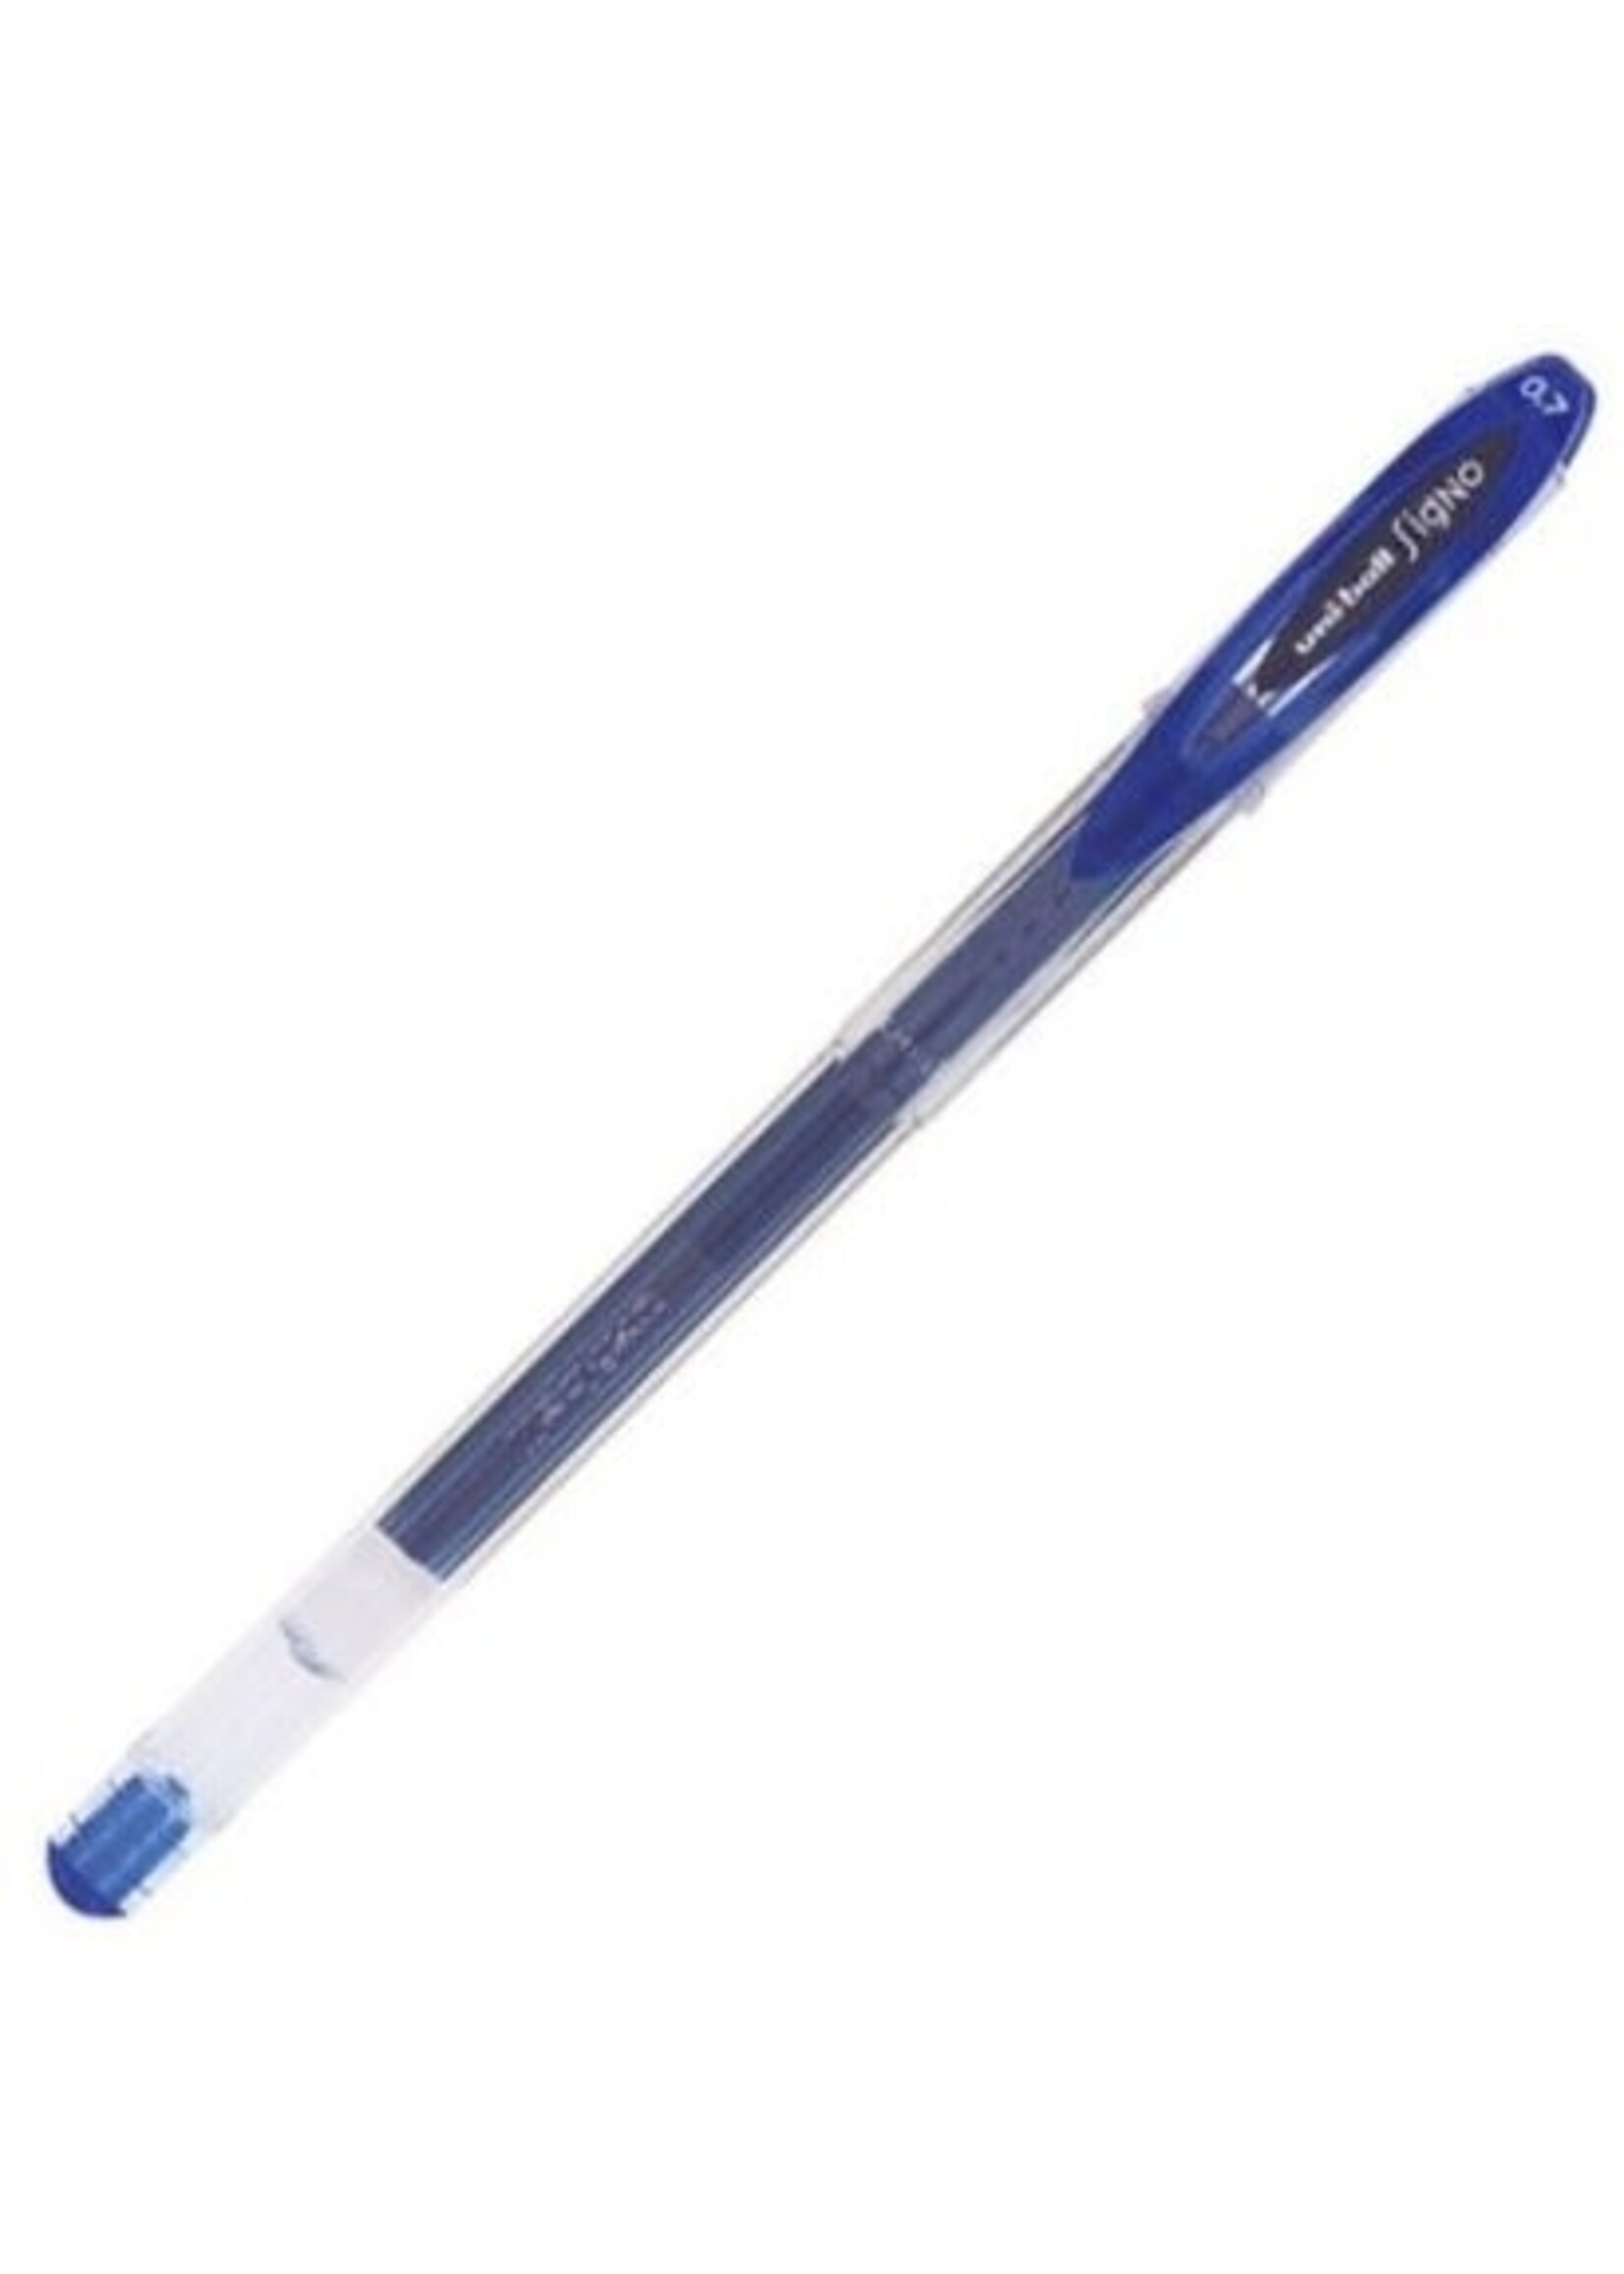 Uni Ball Gelstick Pen, Metallic Blue